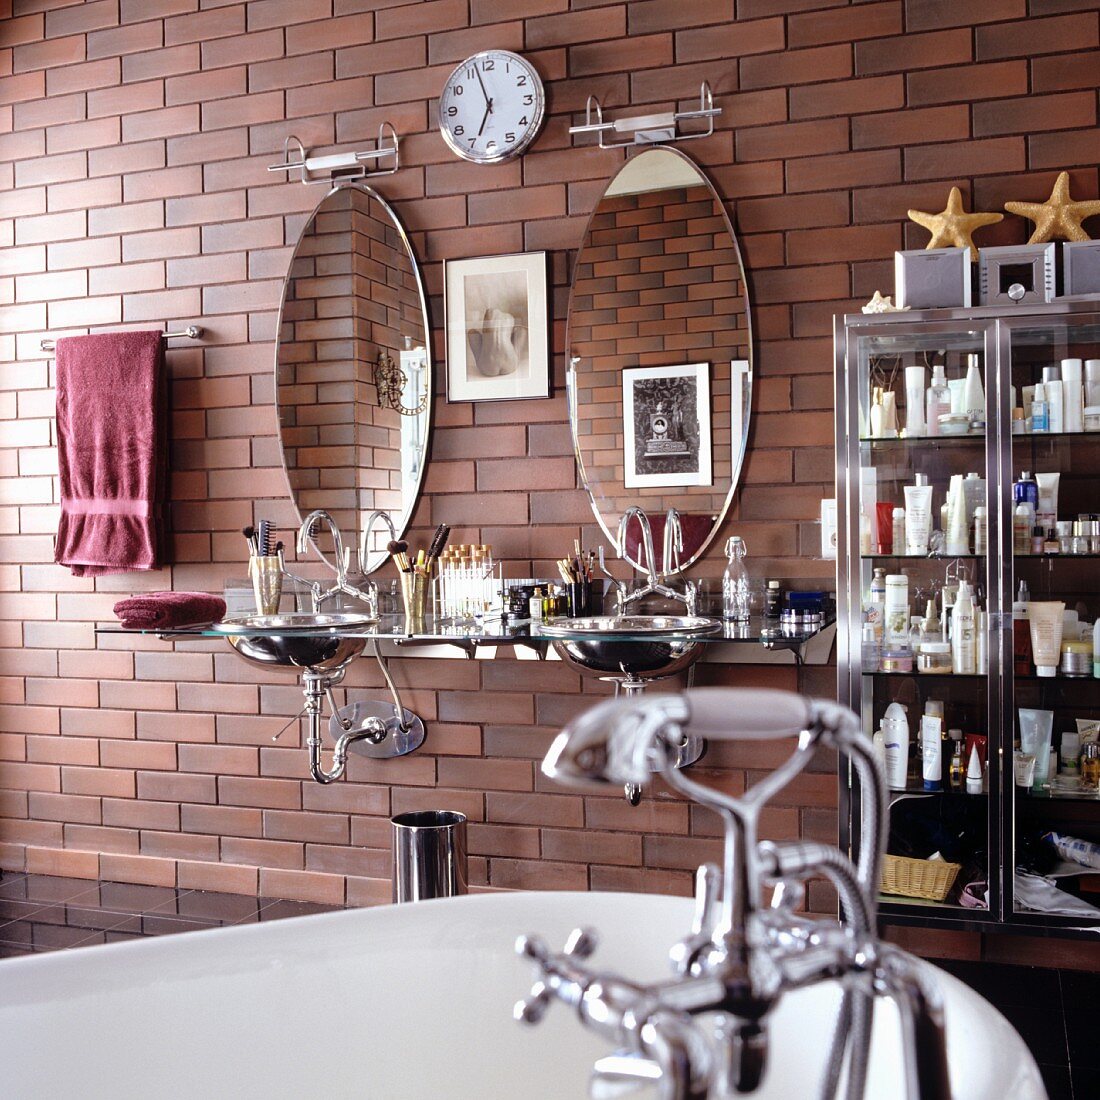 Badezimmer im Vintagestil - teilweise sichtbare Badewanne mit Vintage Armatur und moderner Waschtisch mit ovalen Spiegeln an Wand mit Ziegellook